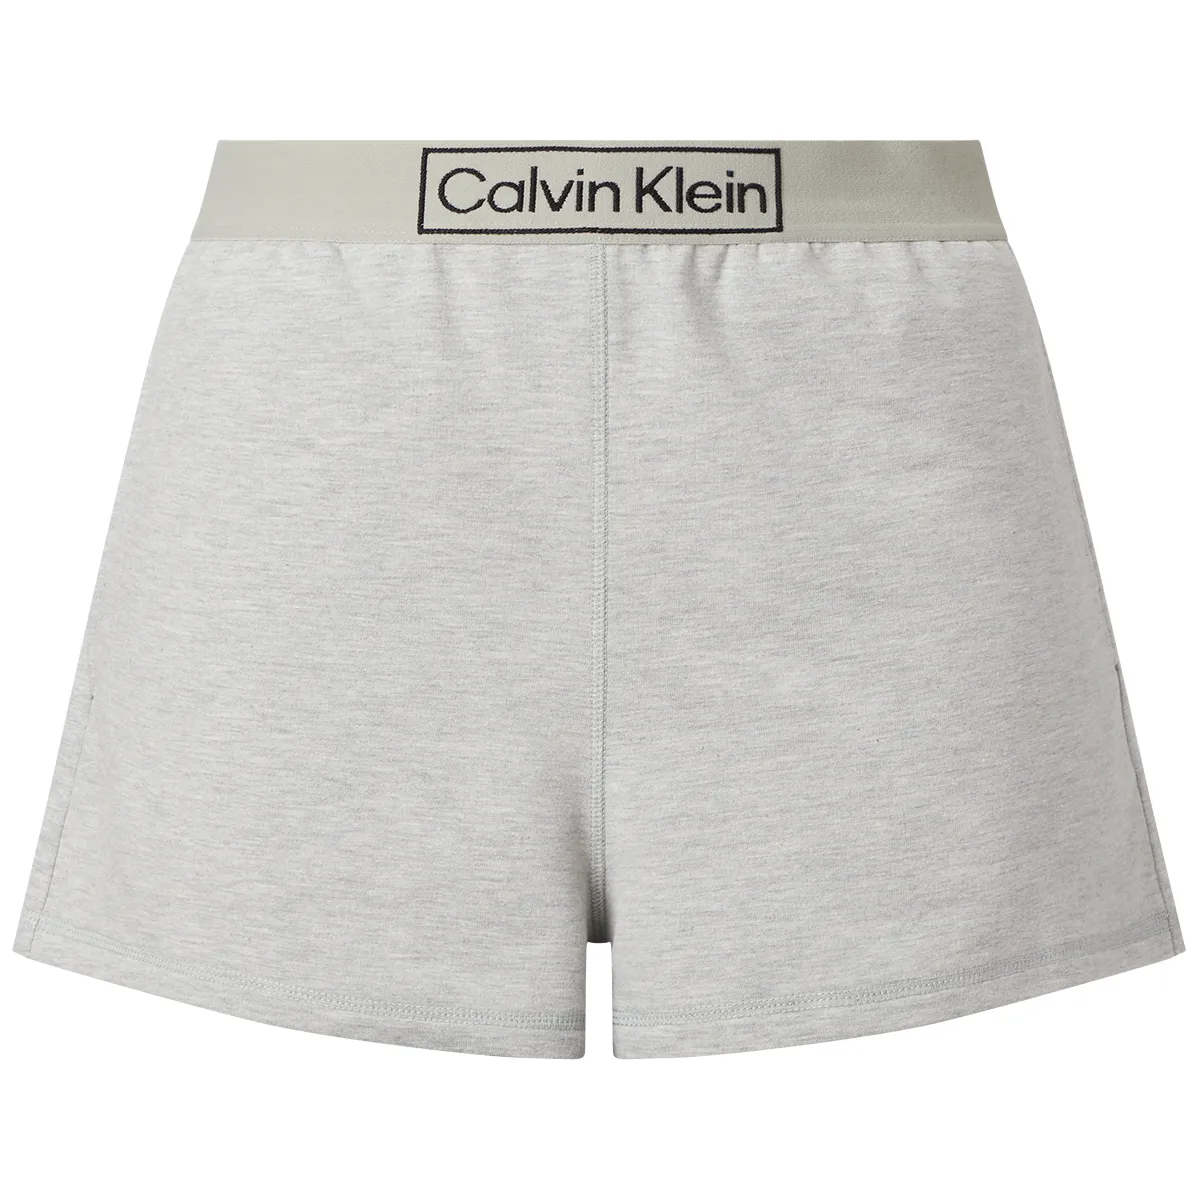 Bordenden Tidsserier Sportsmand Calvin Klein nattøj | Kæmpe udvalg og billige priser her